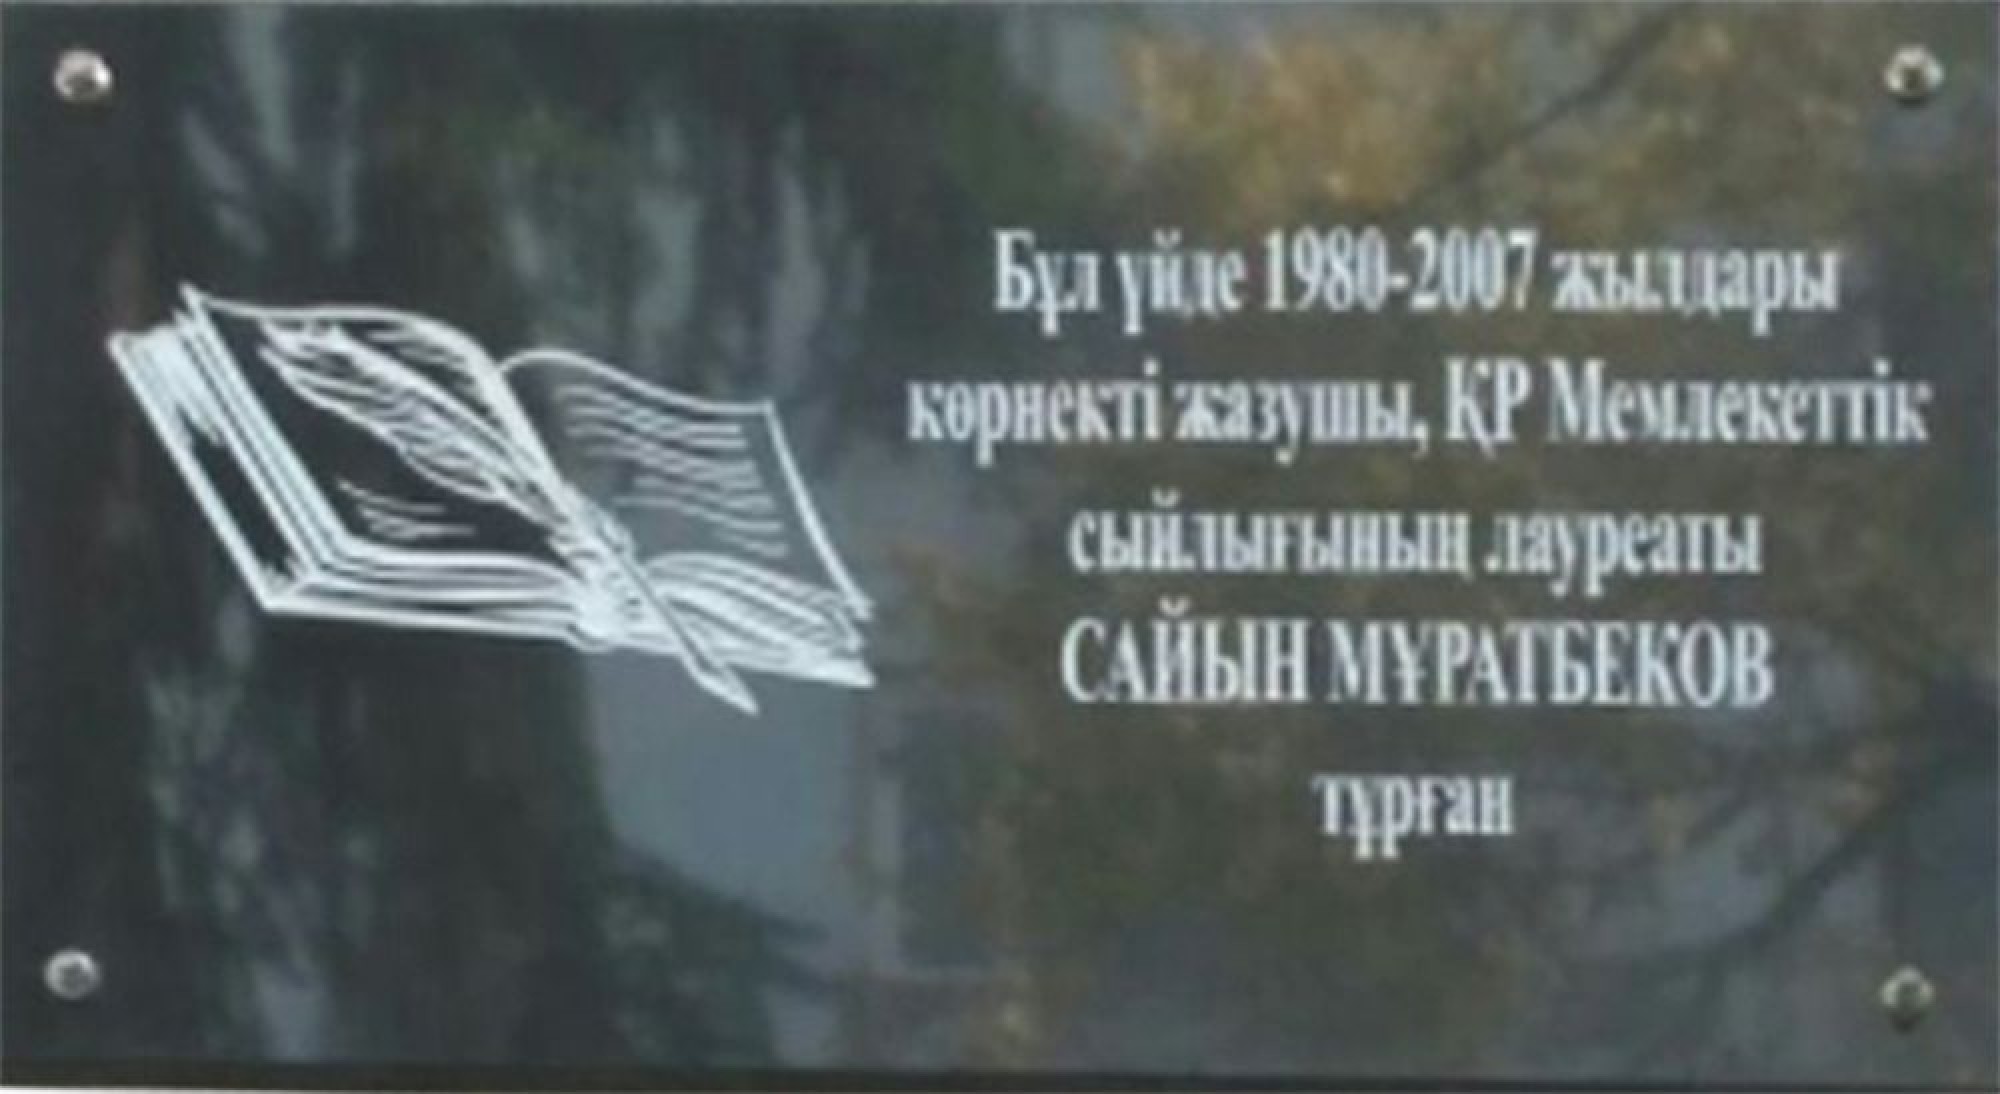 На доме, где жил Саин Муратбеков, установили мемориальную доску